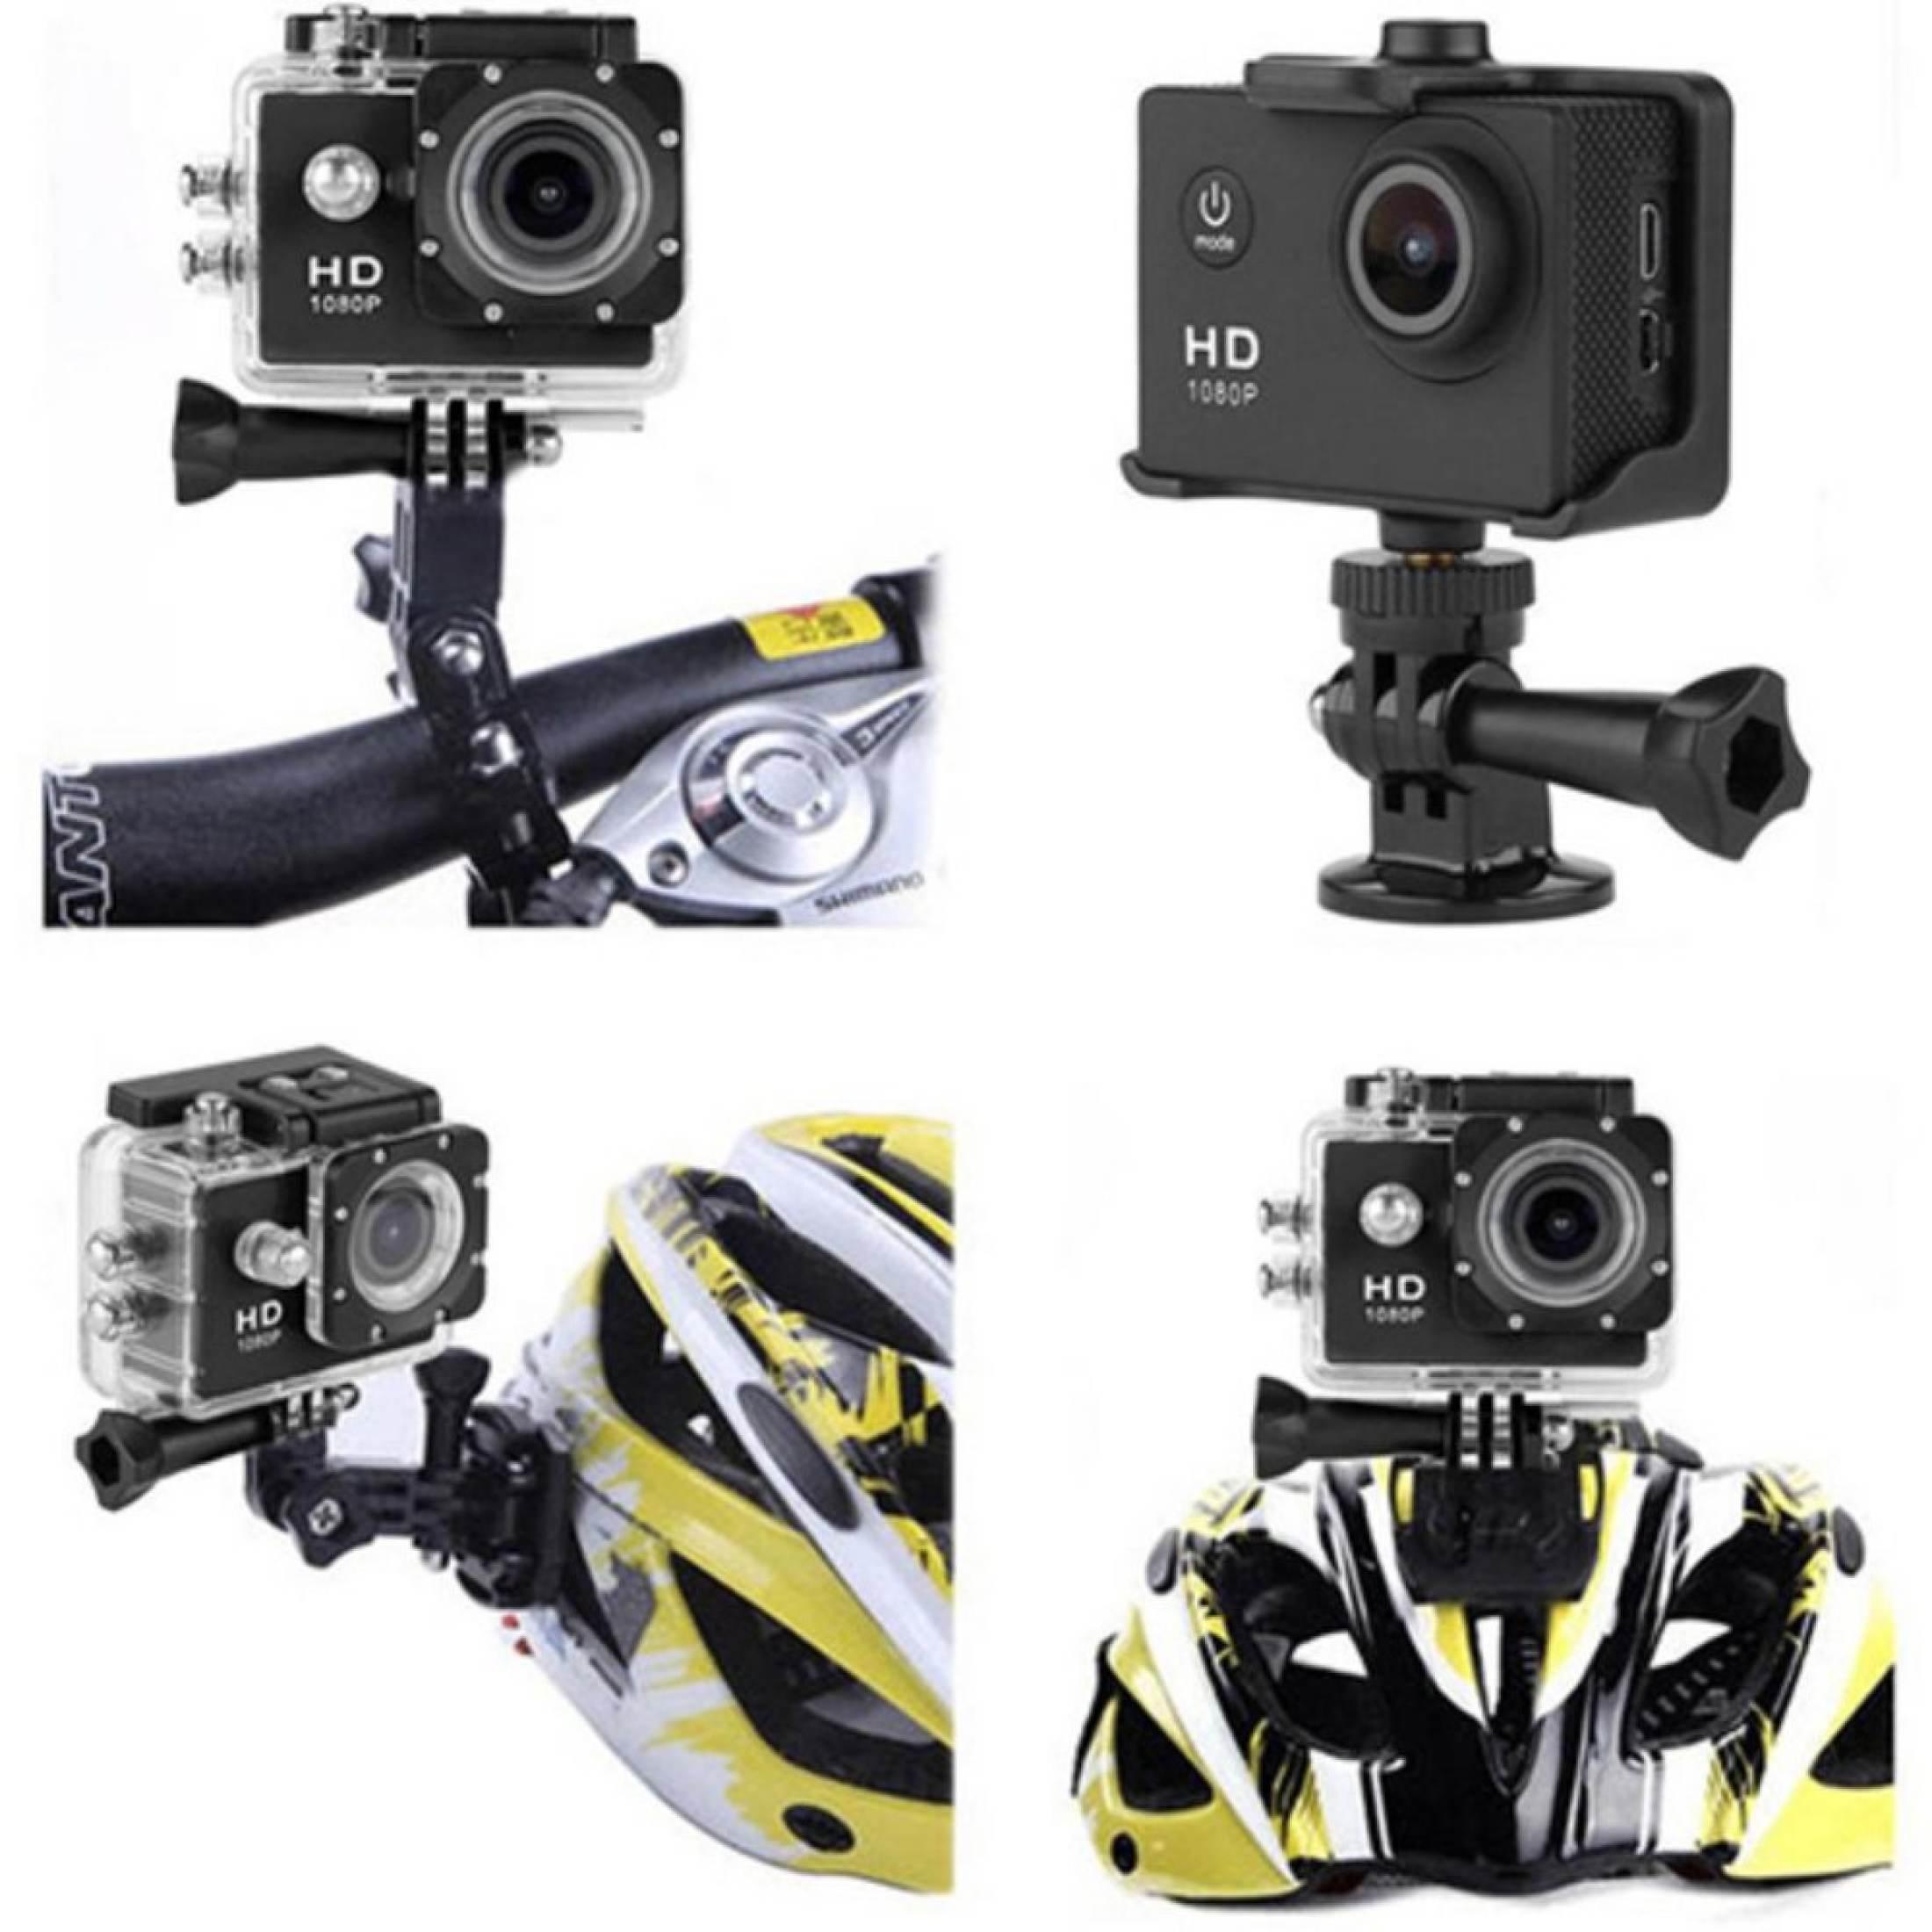 ภาพที่ให้รายละเอียดเกี่ยวกับ ขายดีสุด！！！！ กล้องจักรยาน action cam กันน้ำ 30m + Full HD (สีดำ) กล้องติดรถจักรยาน กล้องติดหมวก กล้องติดรถมอเตอร์ไซต์